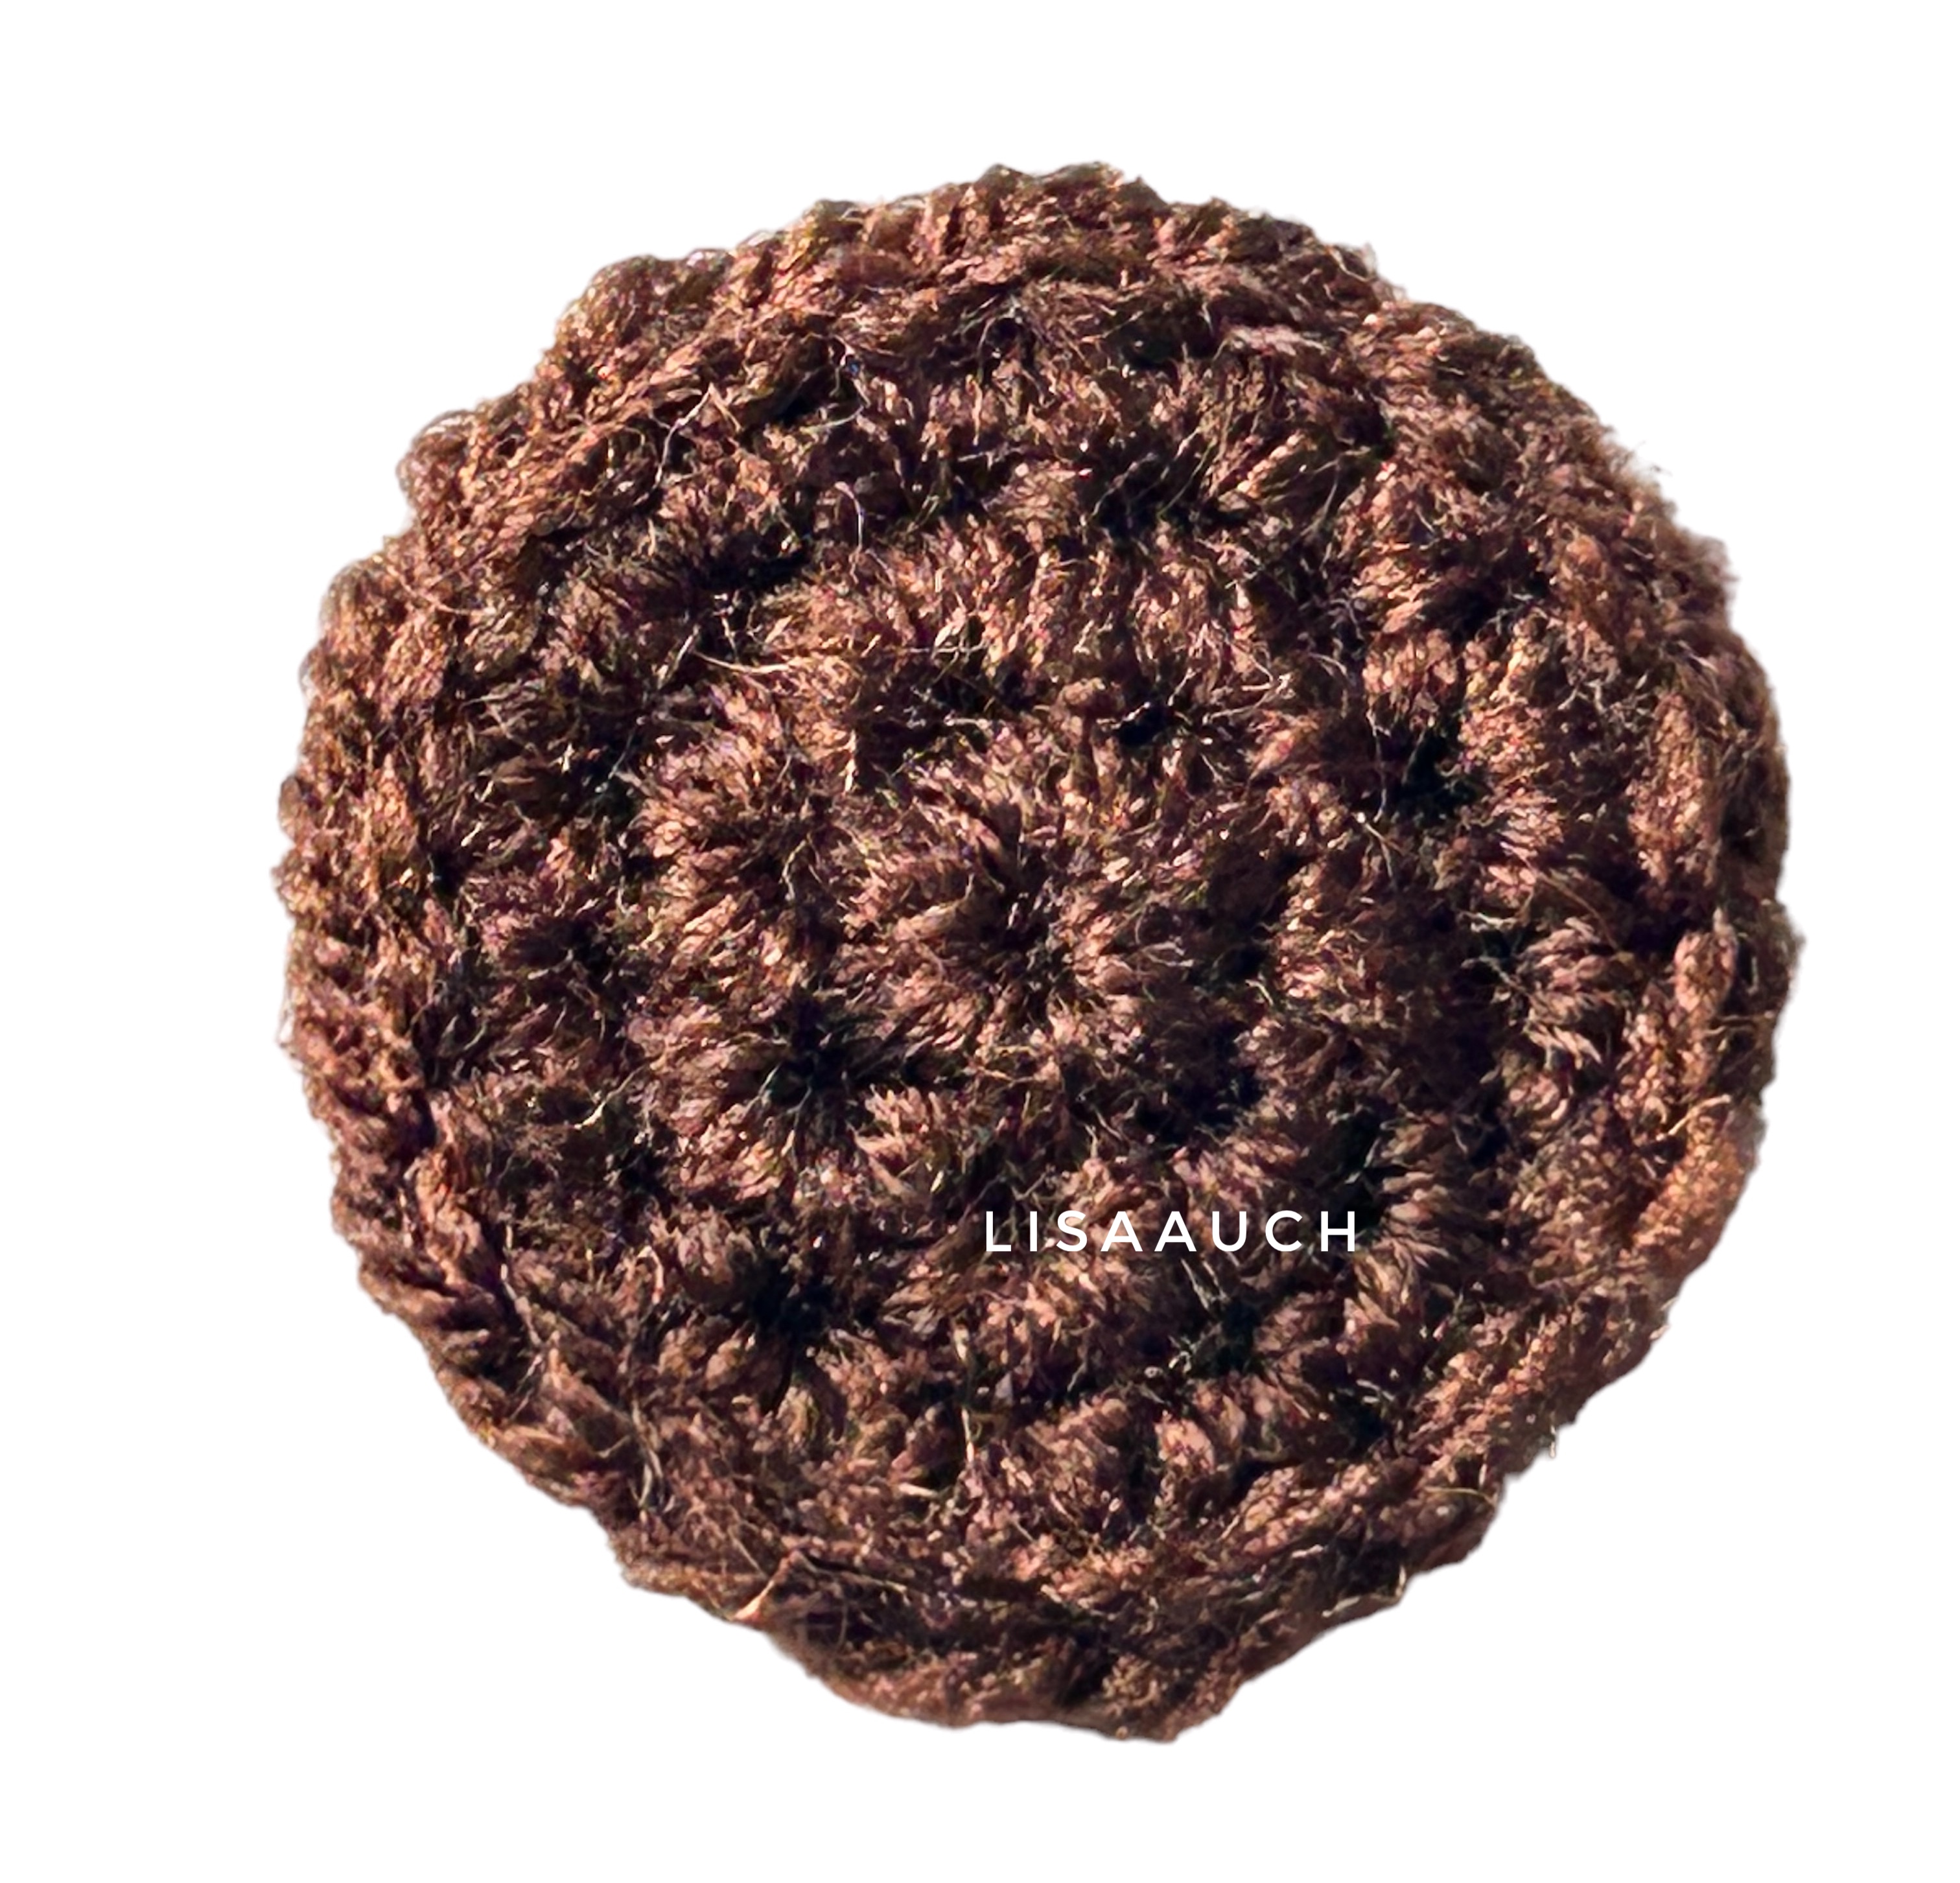 CAR Crochet Accessory - Rear View mirror Hanging flower basket CROCHET Pattern